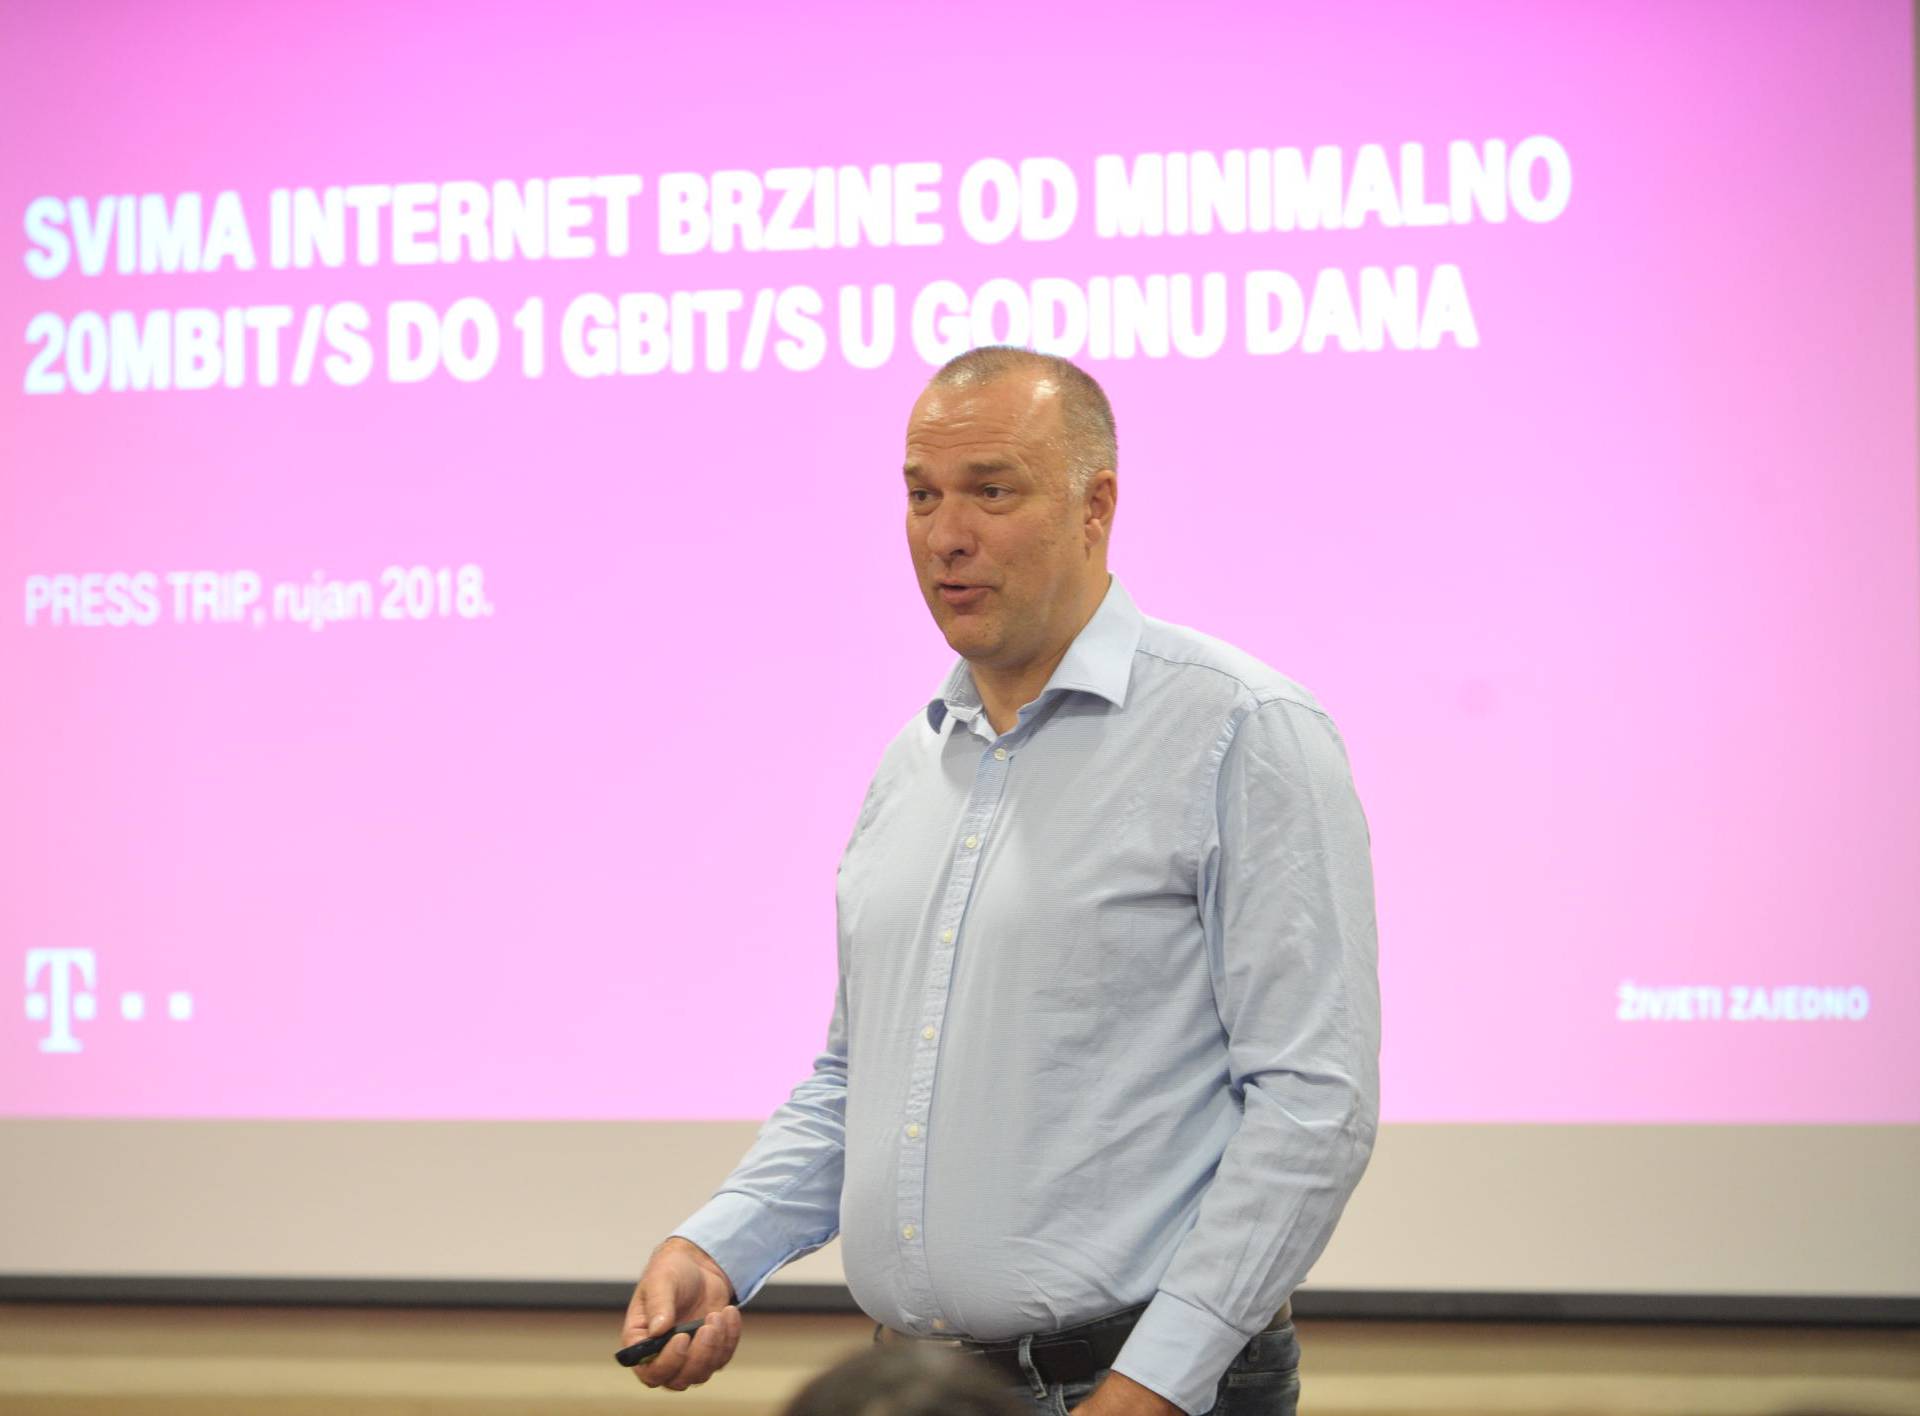 'Bez smanjenja velikih nameta neće biti ni digitalne Hrvatske'